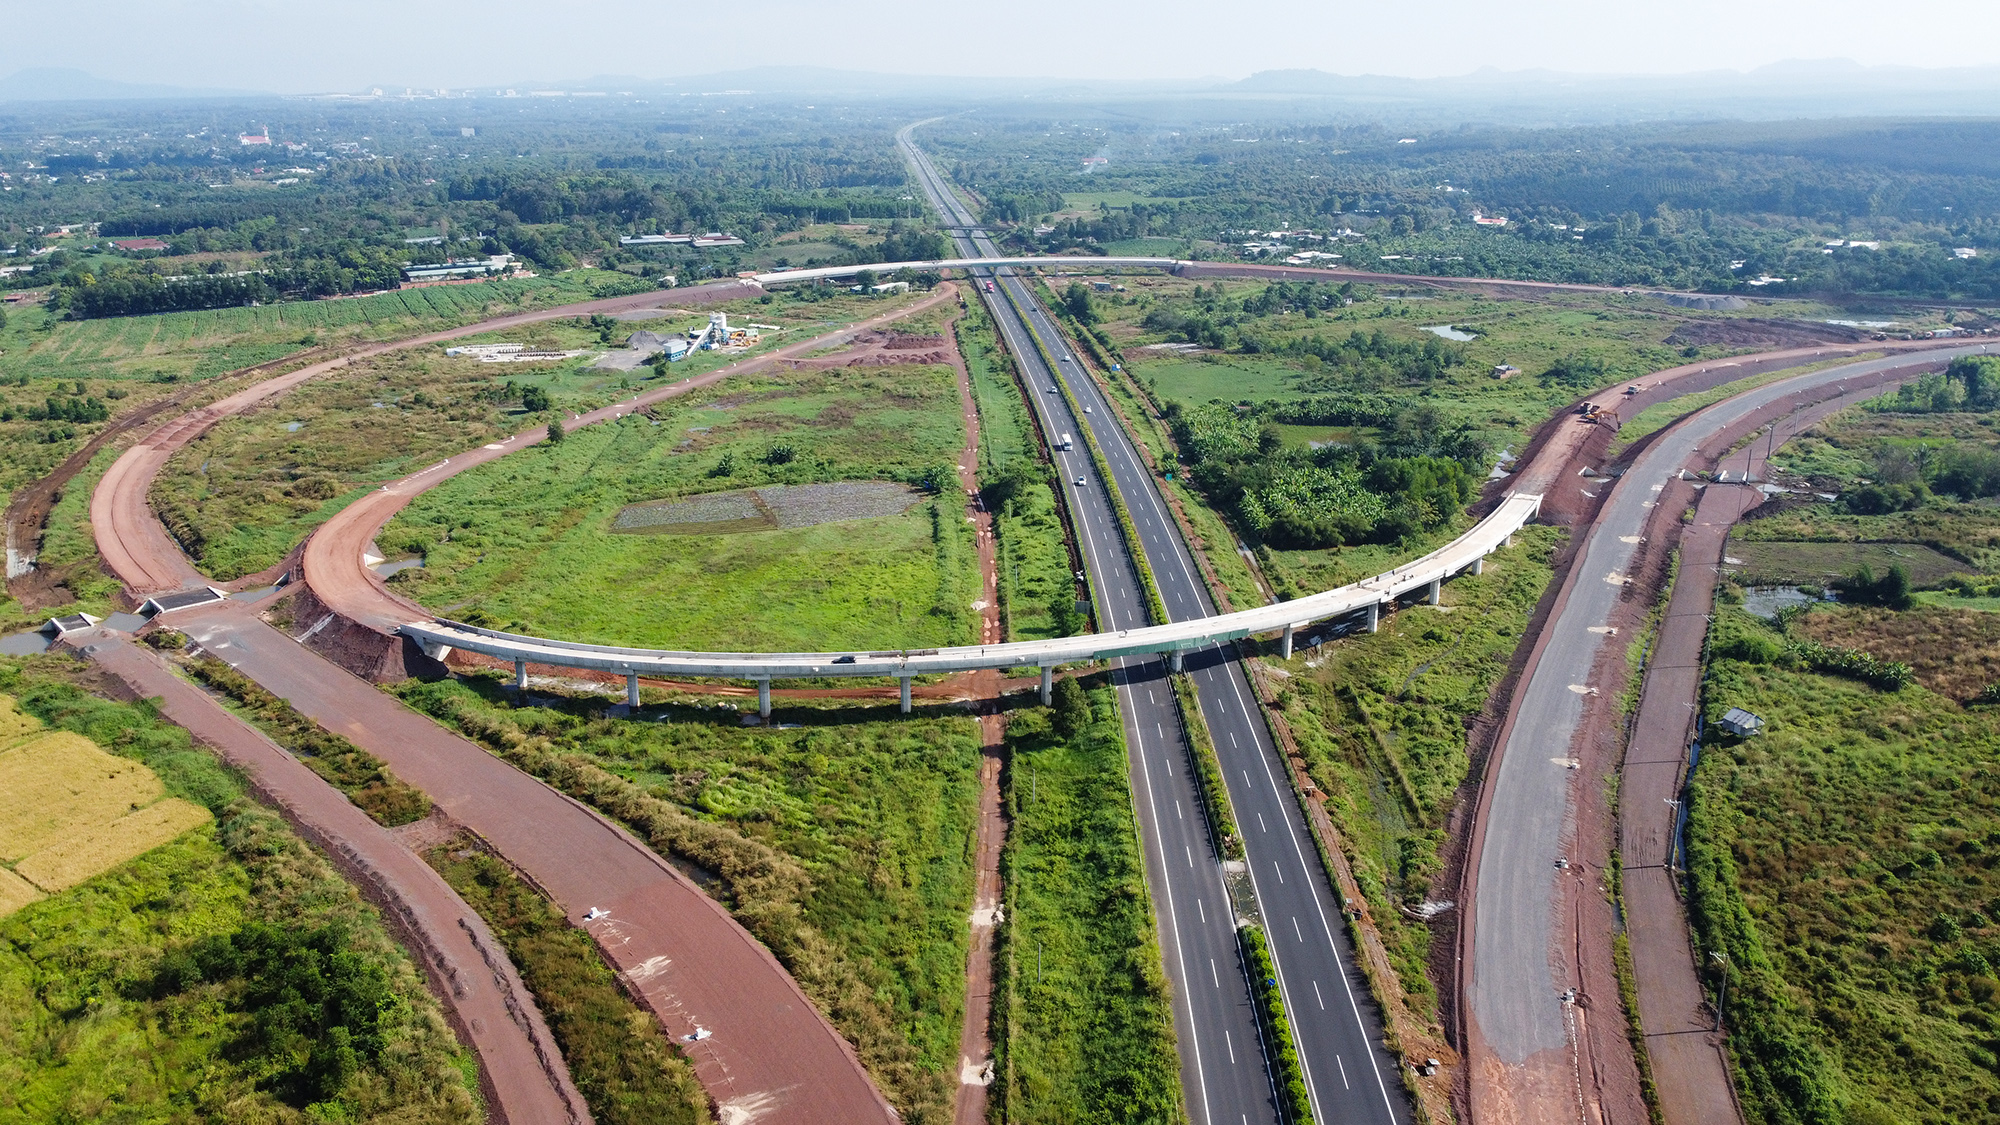 Dự án cao tốc Dầu Giây - Phan Thiết dài 99km, đi qua địa bàn tỉnh Đồng Nai và Bình Thuận, khởi công tháng 9/2020, tổng chi phí hơn 12.500 tỷ đồng, dự kiến hoàn thành cuối năm 2022.